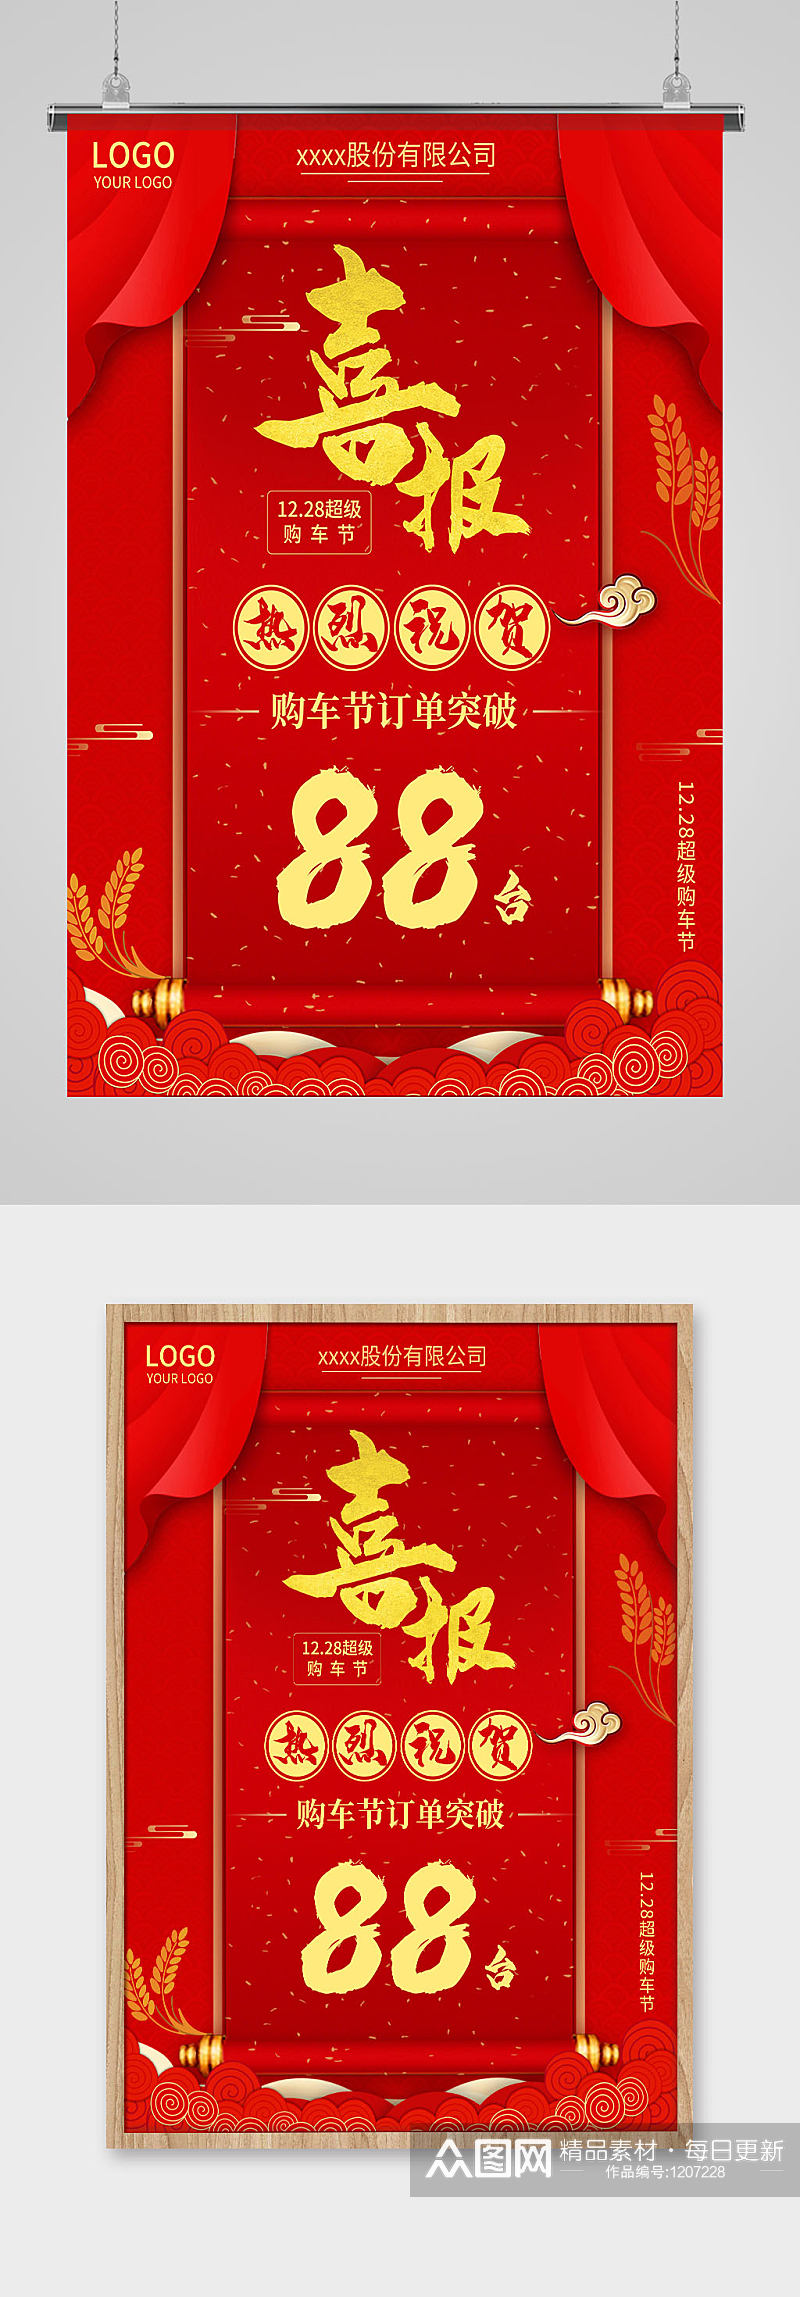 红色中国风艺术字喜报宣传海报素材